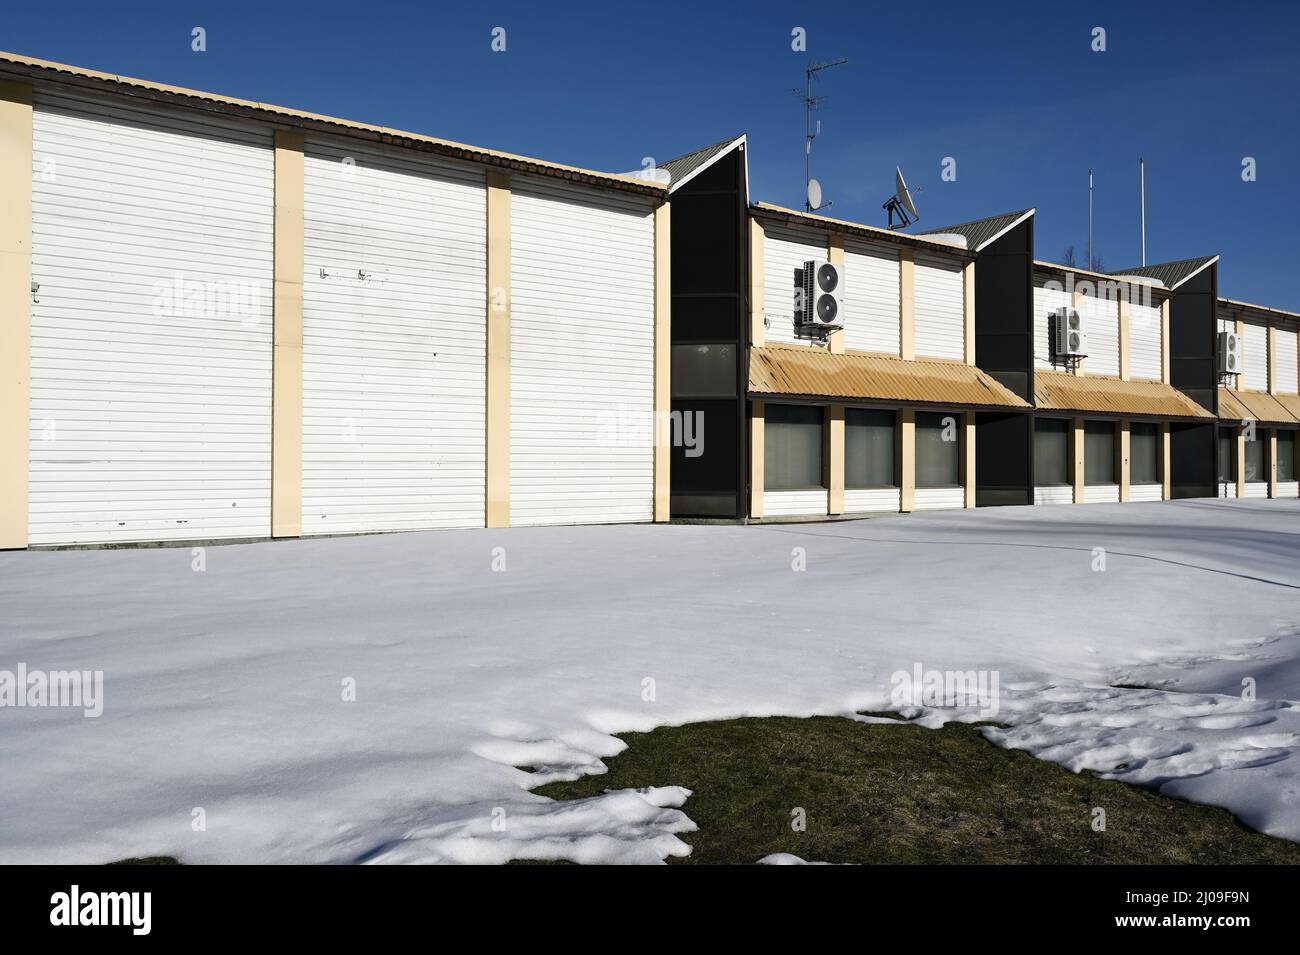 abbandonato edificio non residenziale con parabola satellitare sul tetto in inverno, deadpan fotografia Foto Stock